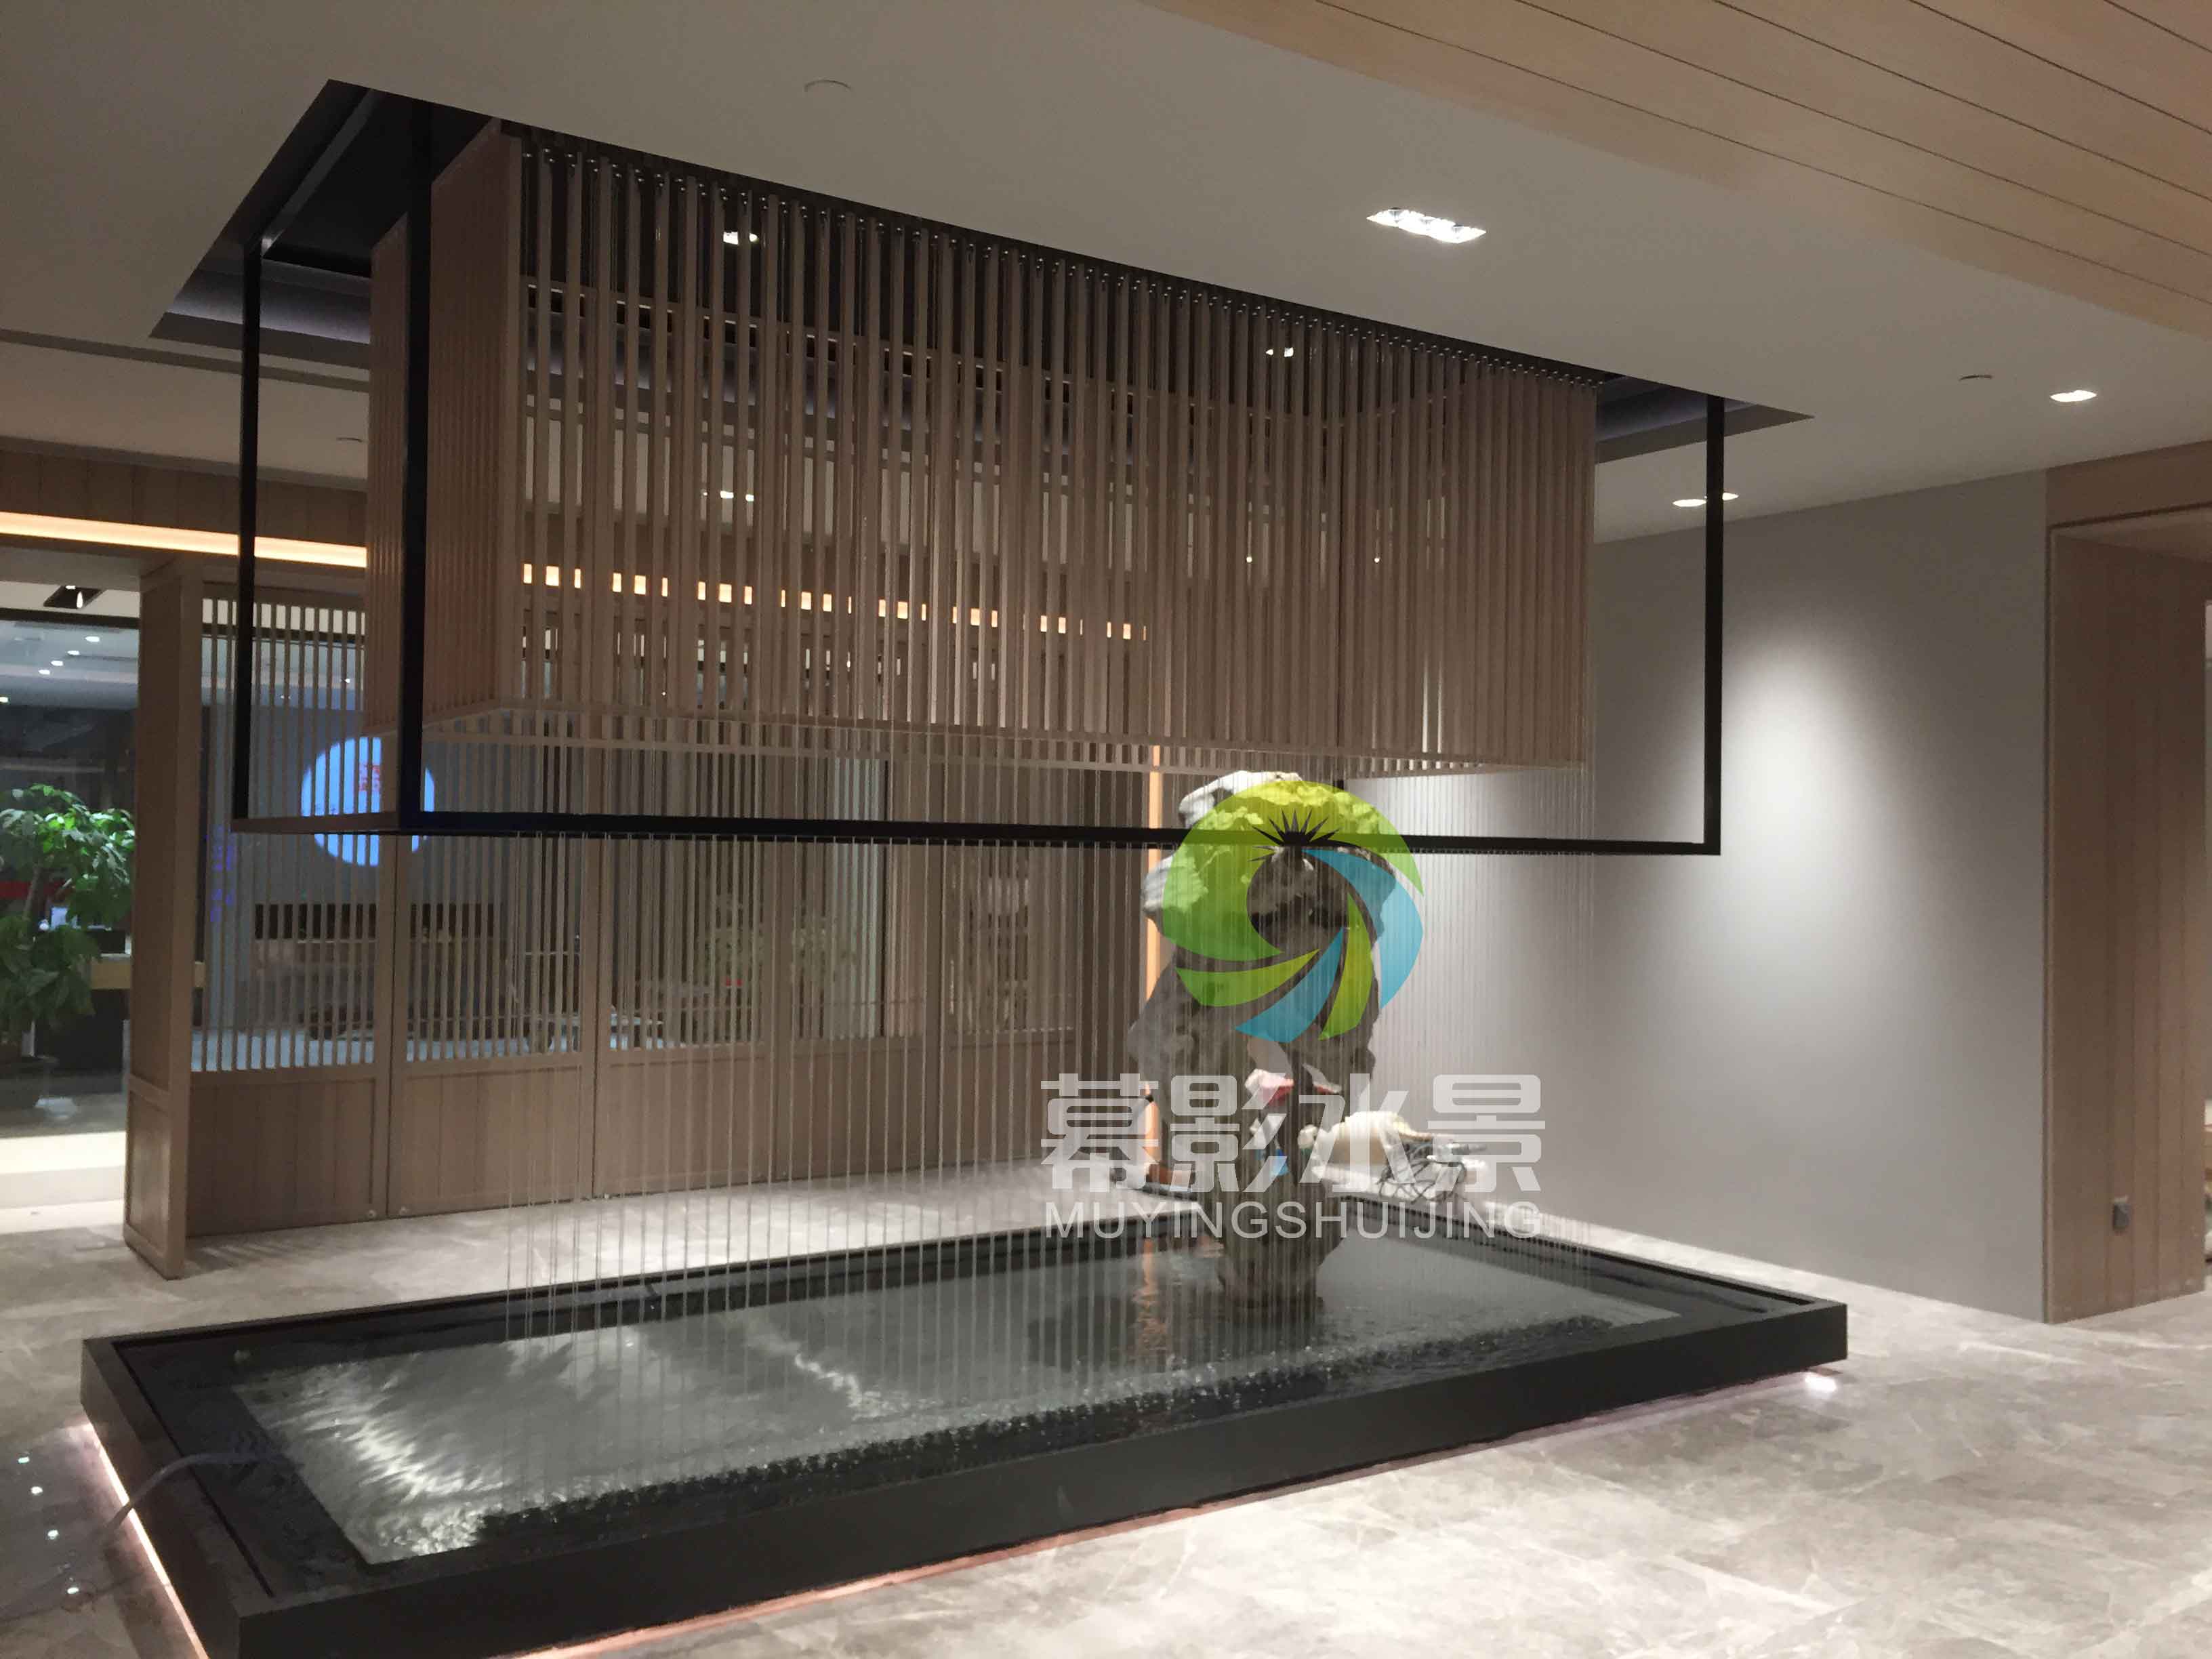 光纤水帘在酒店中庭中央位置,水景设计幕影水景全程参与,简约大方的